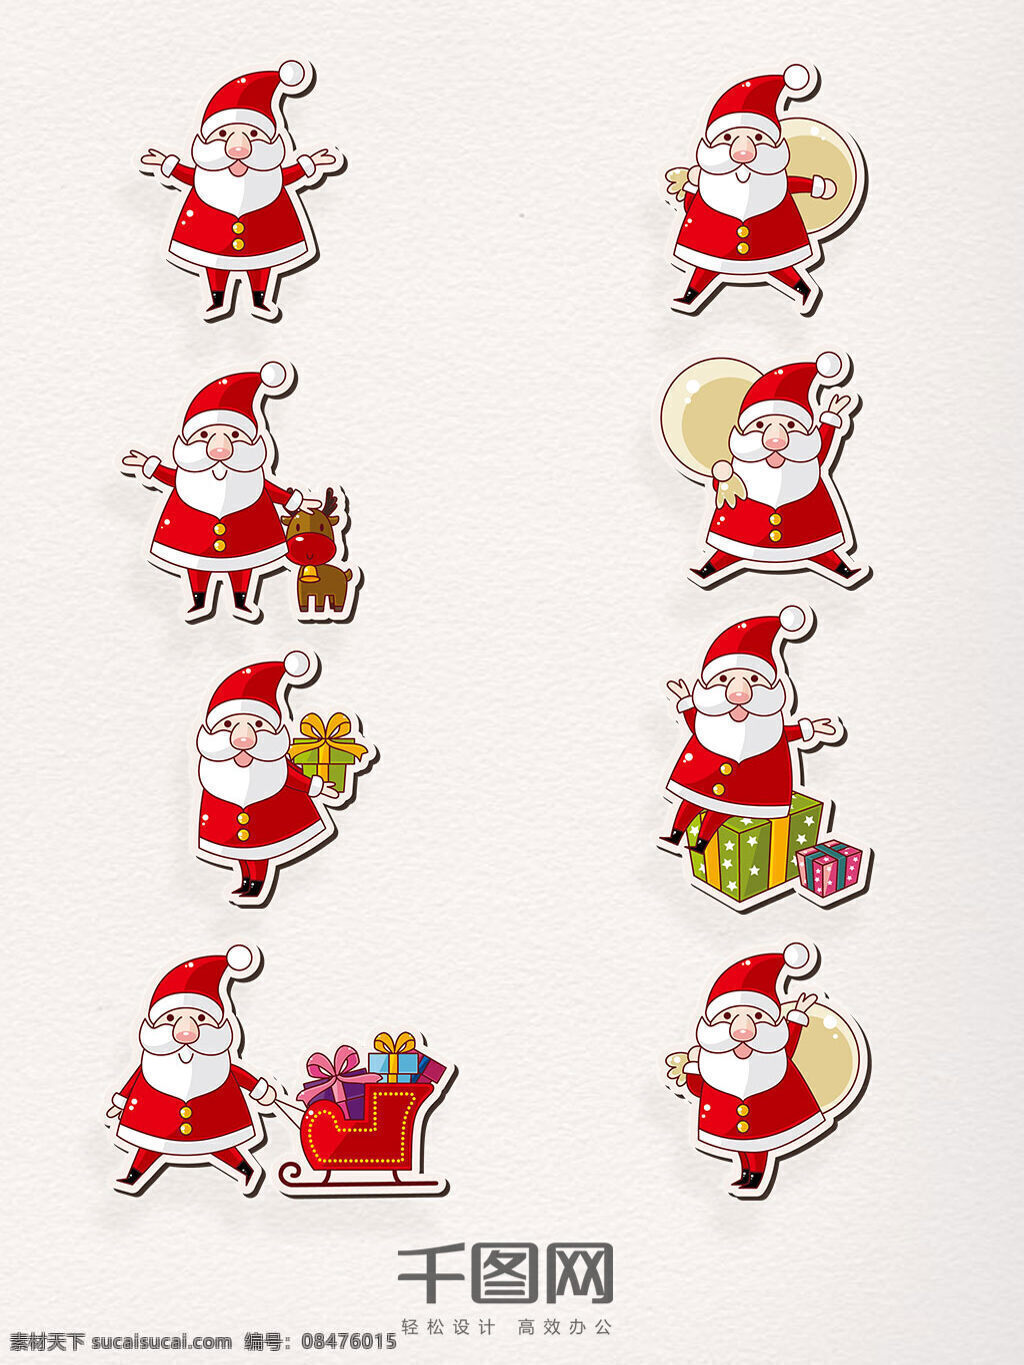 组 手绘 圣诞老人 卡通 形象 白色 圣诞节 麋鹿 雪橇 圣诞礼物 节日快乐 帽子